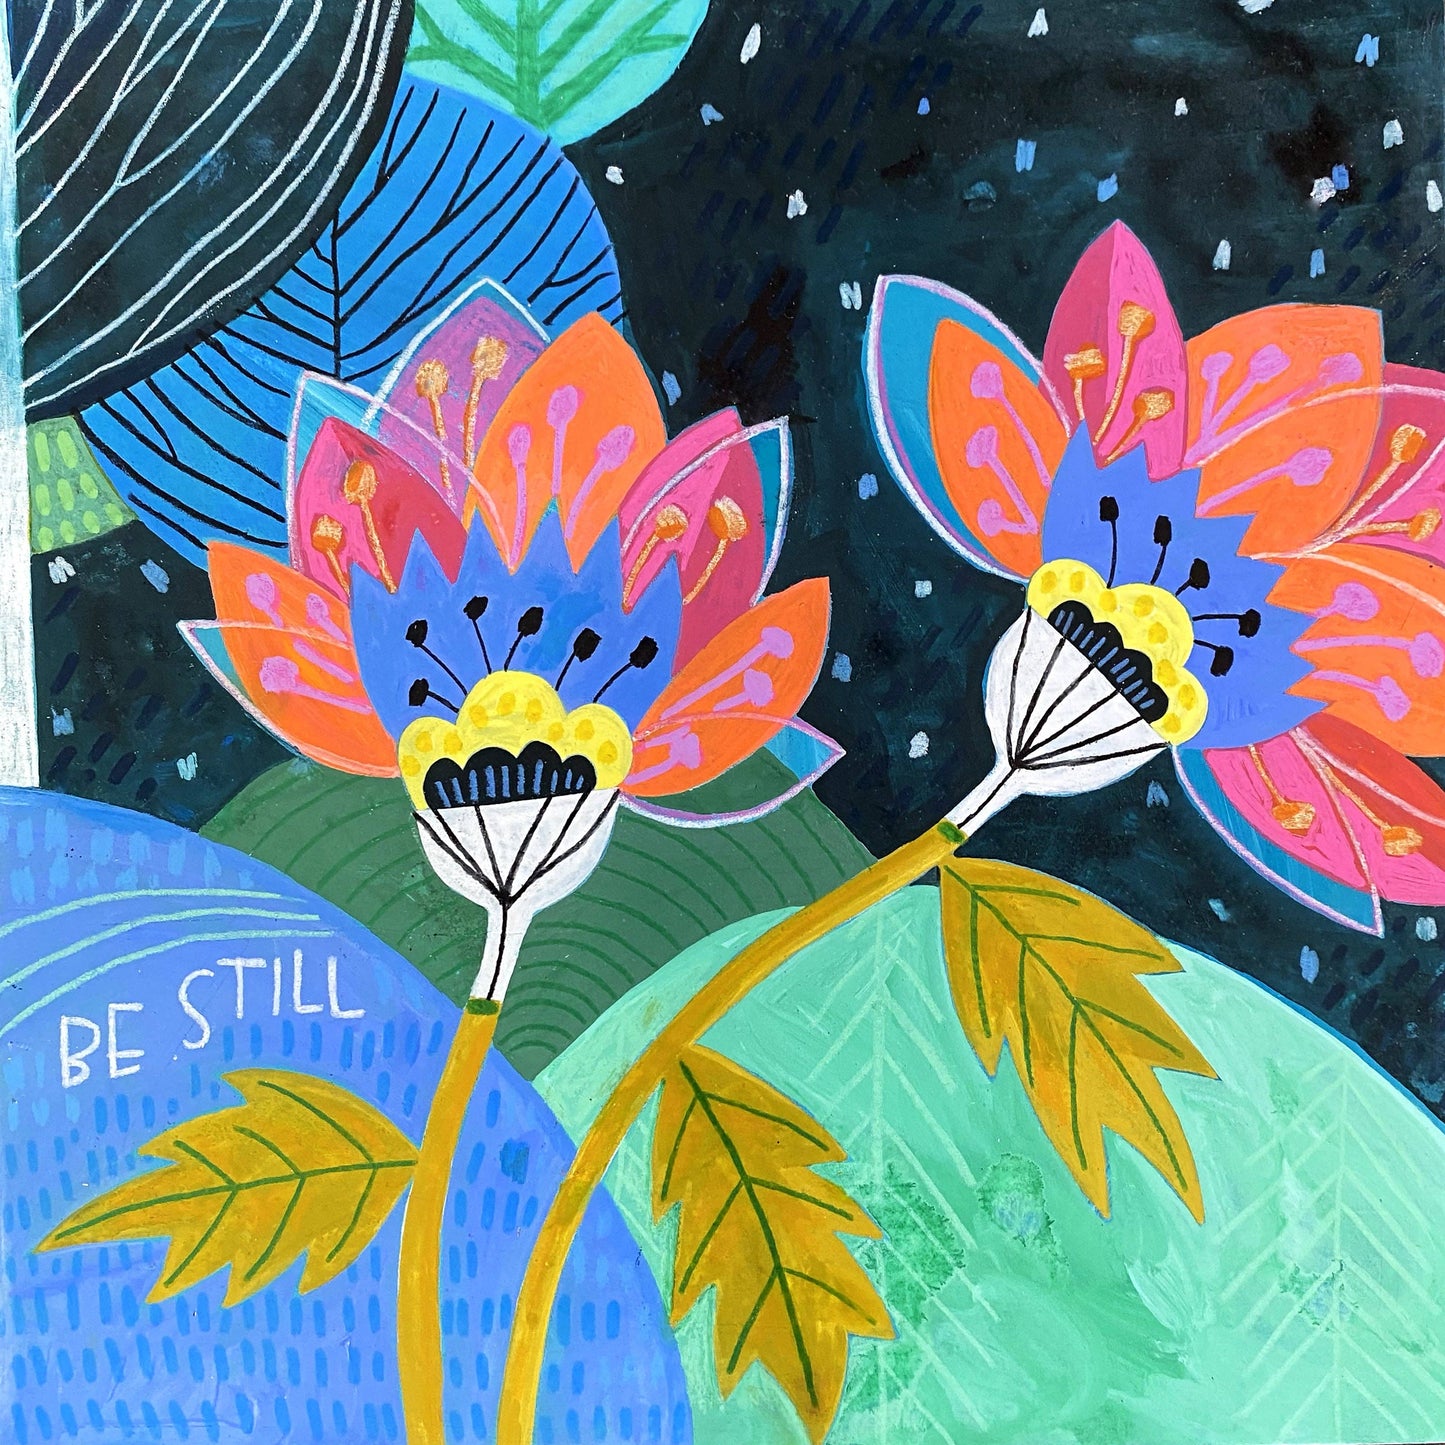 Be Still – Art Print